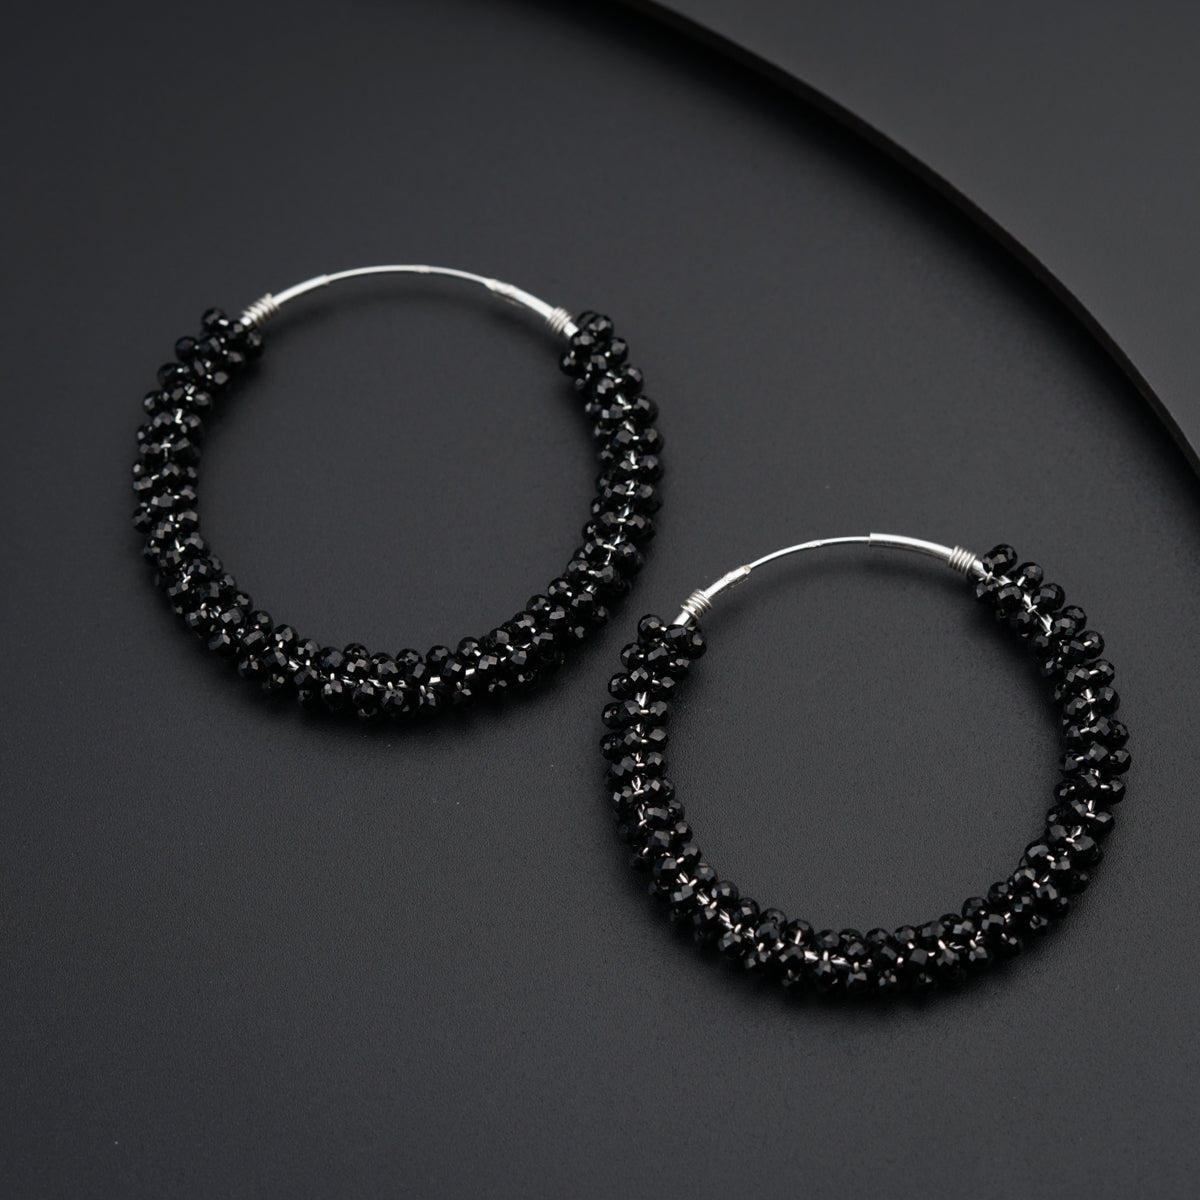 a pair of black beaded hoop earrings